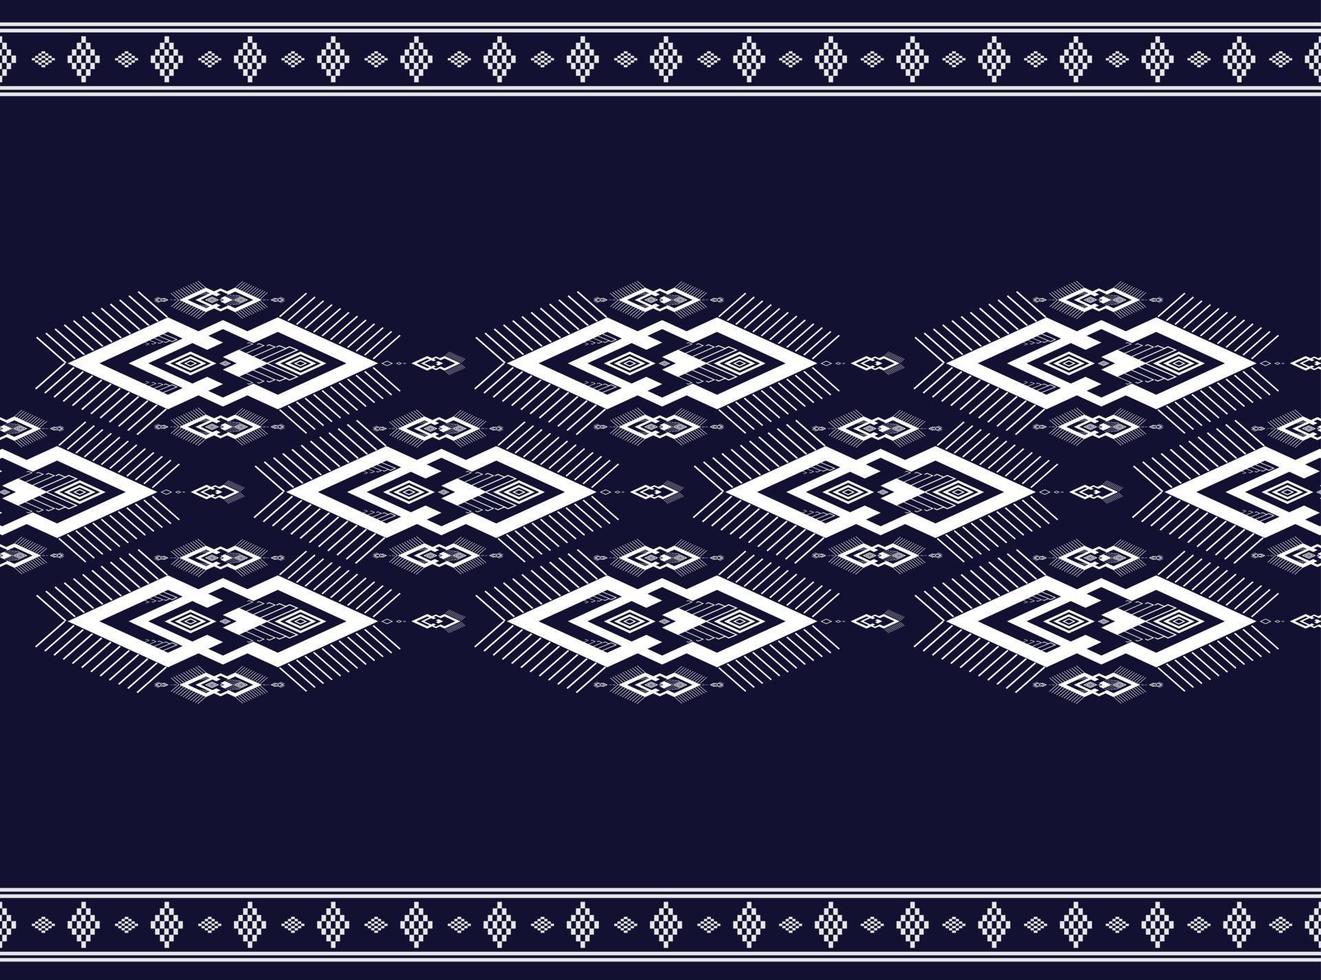 patrón étnico geométrico patrón de diseño tradicional utilizado para falda, alfombra, papel pintado, ropa, envoltura, batik, tela, ropa, moda, vector de fondo blanco de hoja y patrones de bordado de ilustración